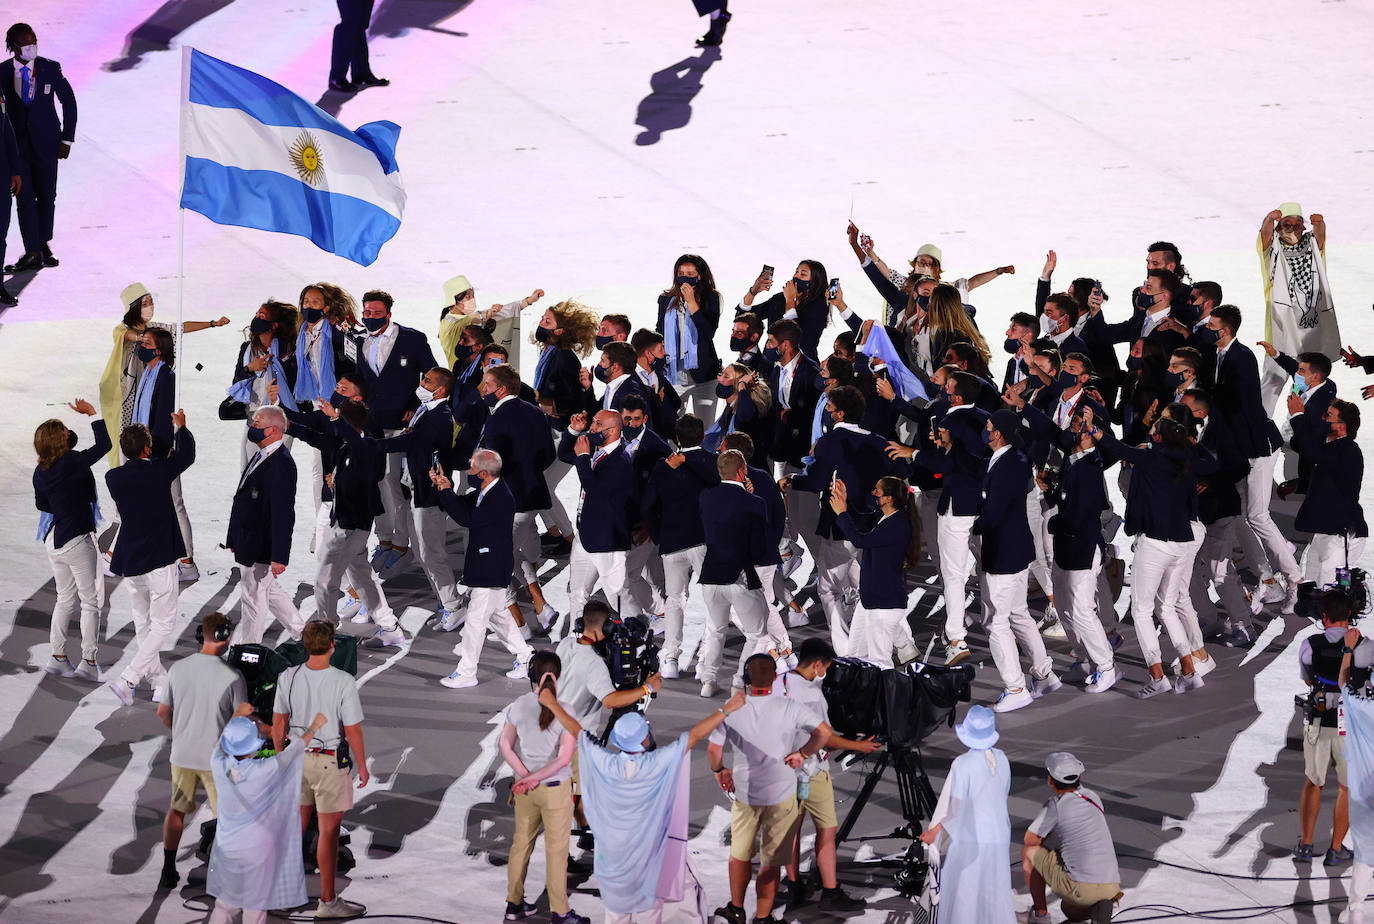 Santiago Lange y Cecilia Carranza lideran a la delegación argentina en su desfile por el Estadio Olímpico de Tokio.